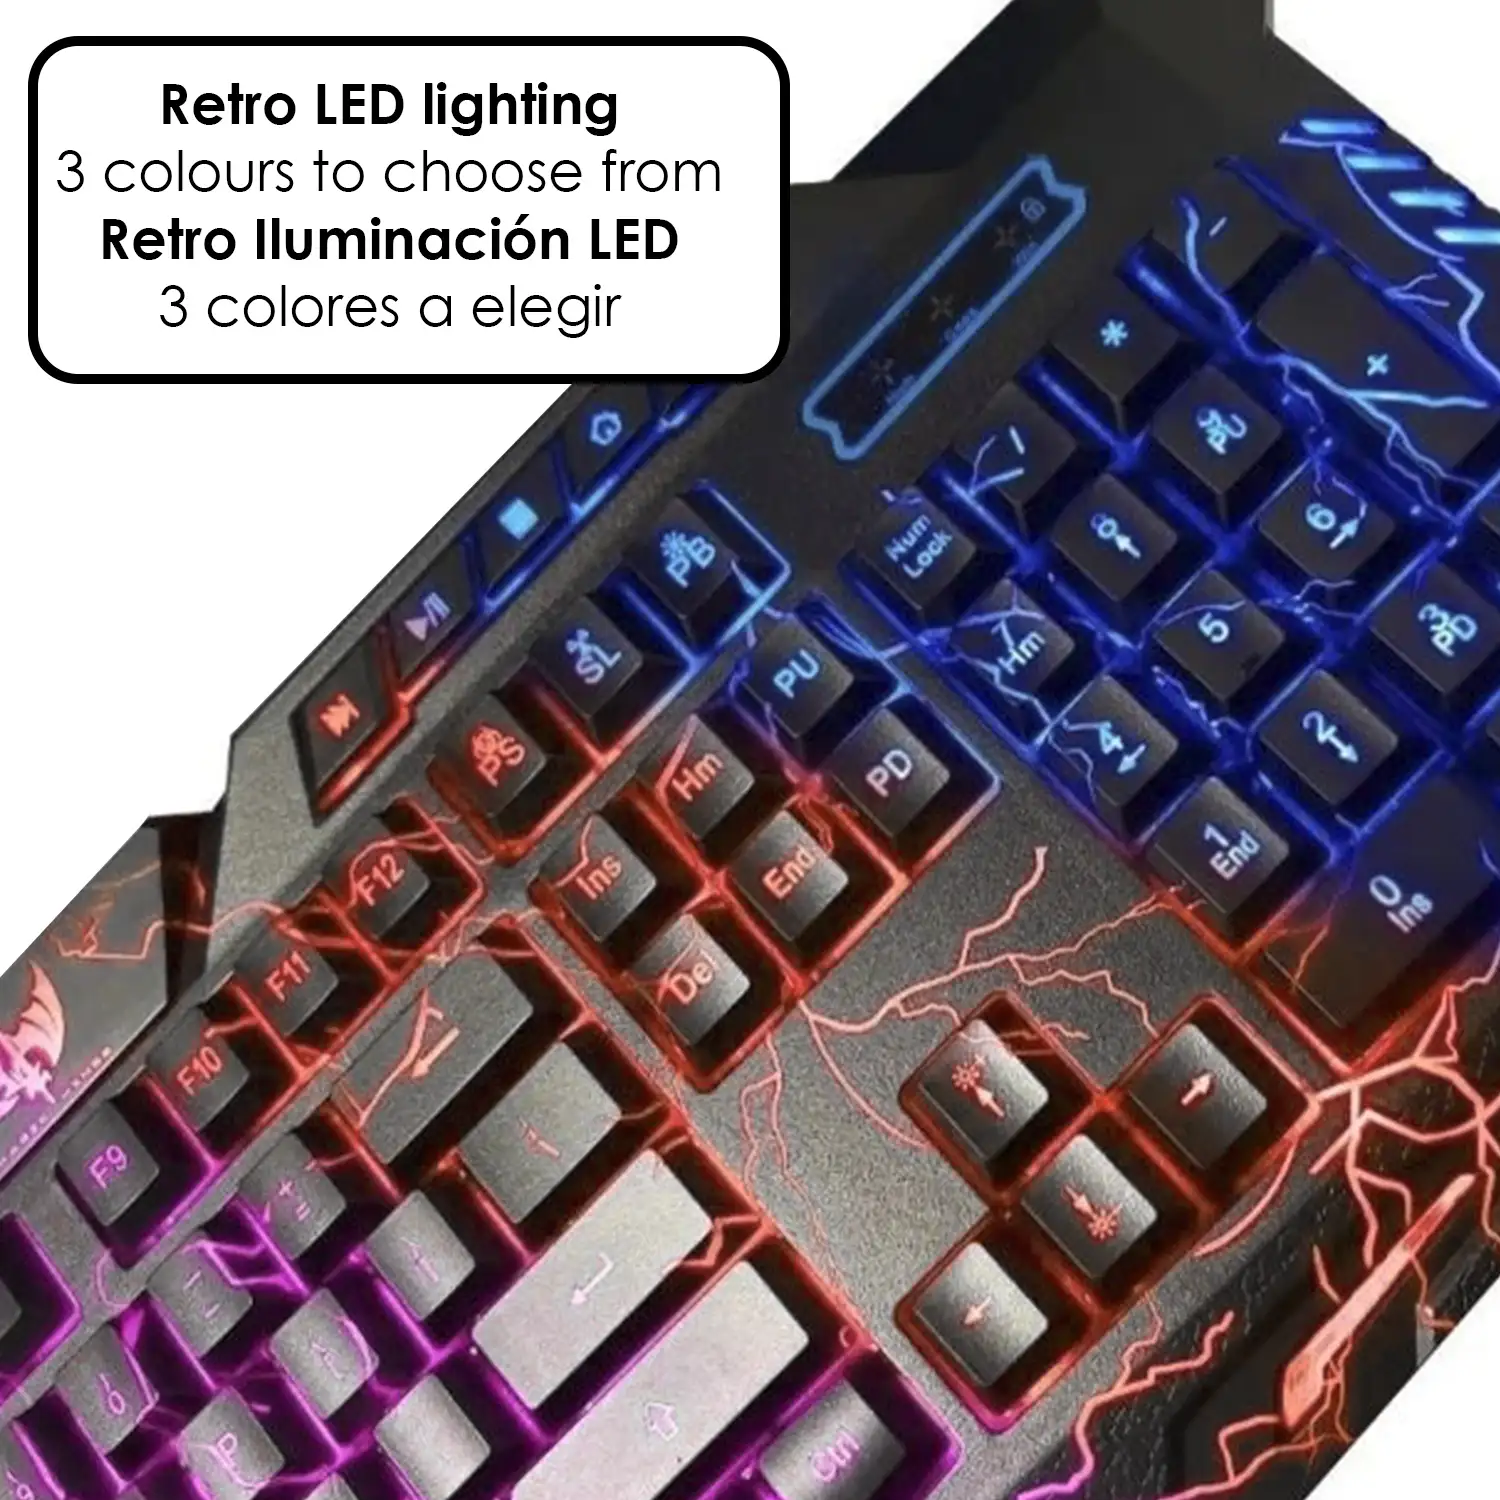 Teclado Gaming M200 con 3 colores de iluminación LED a elegir.